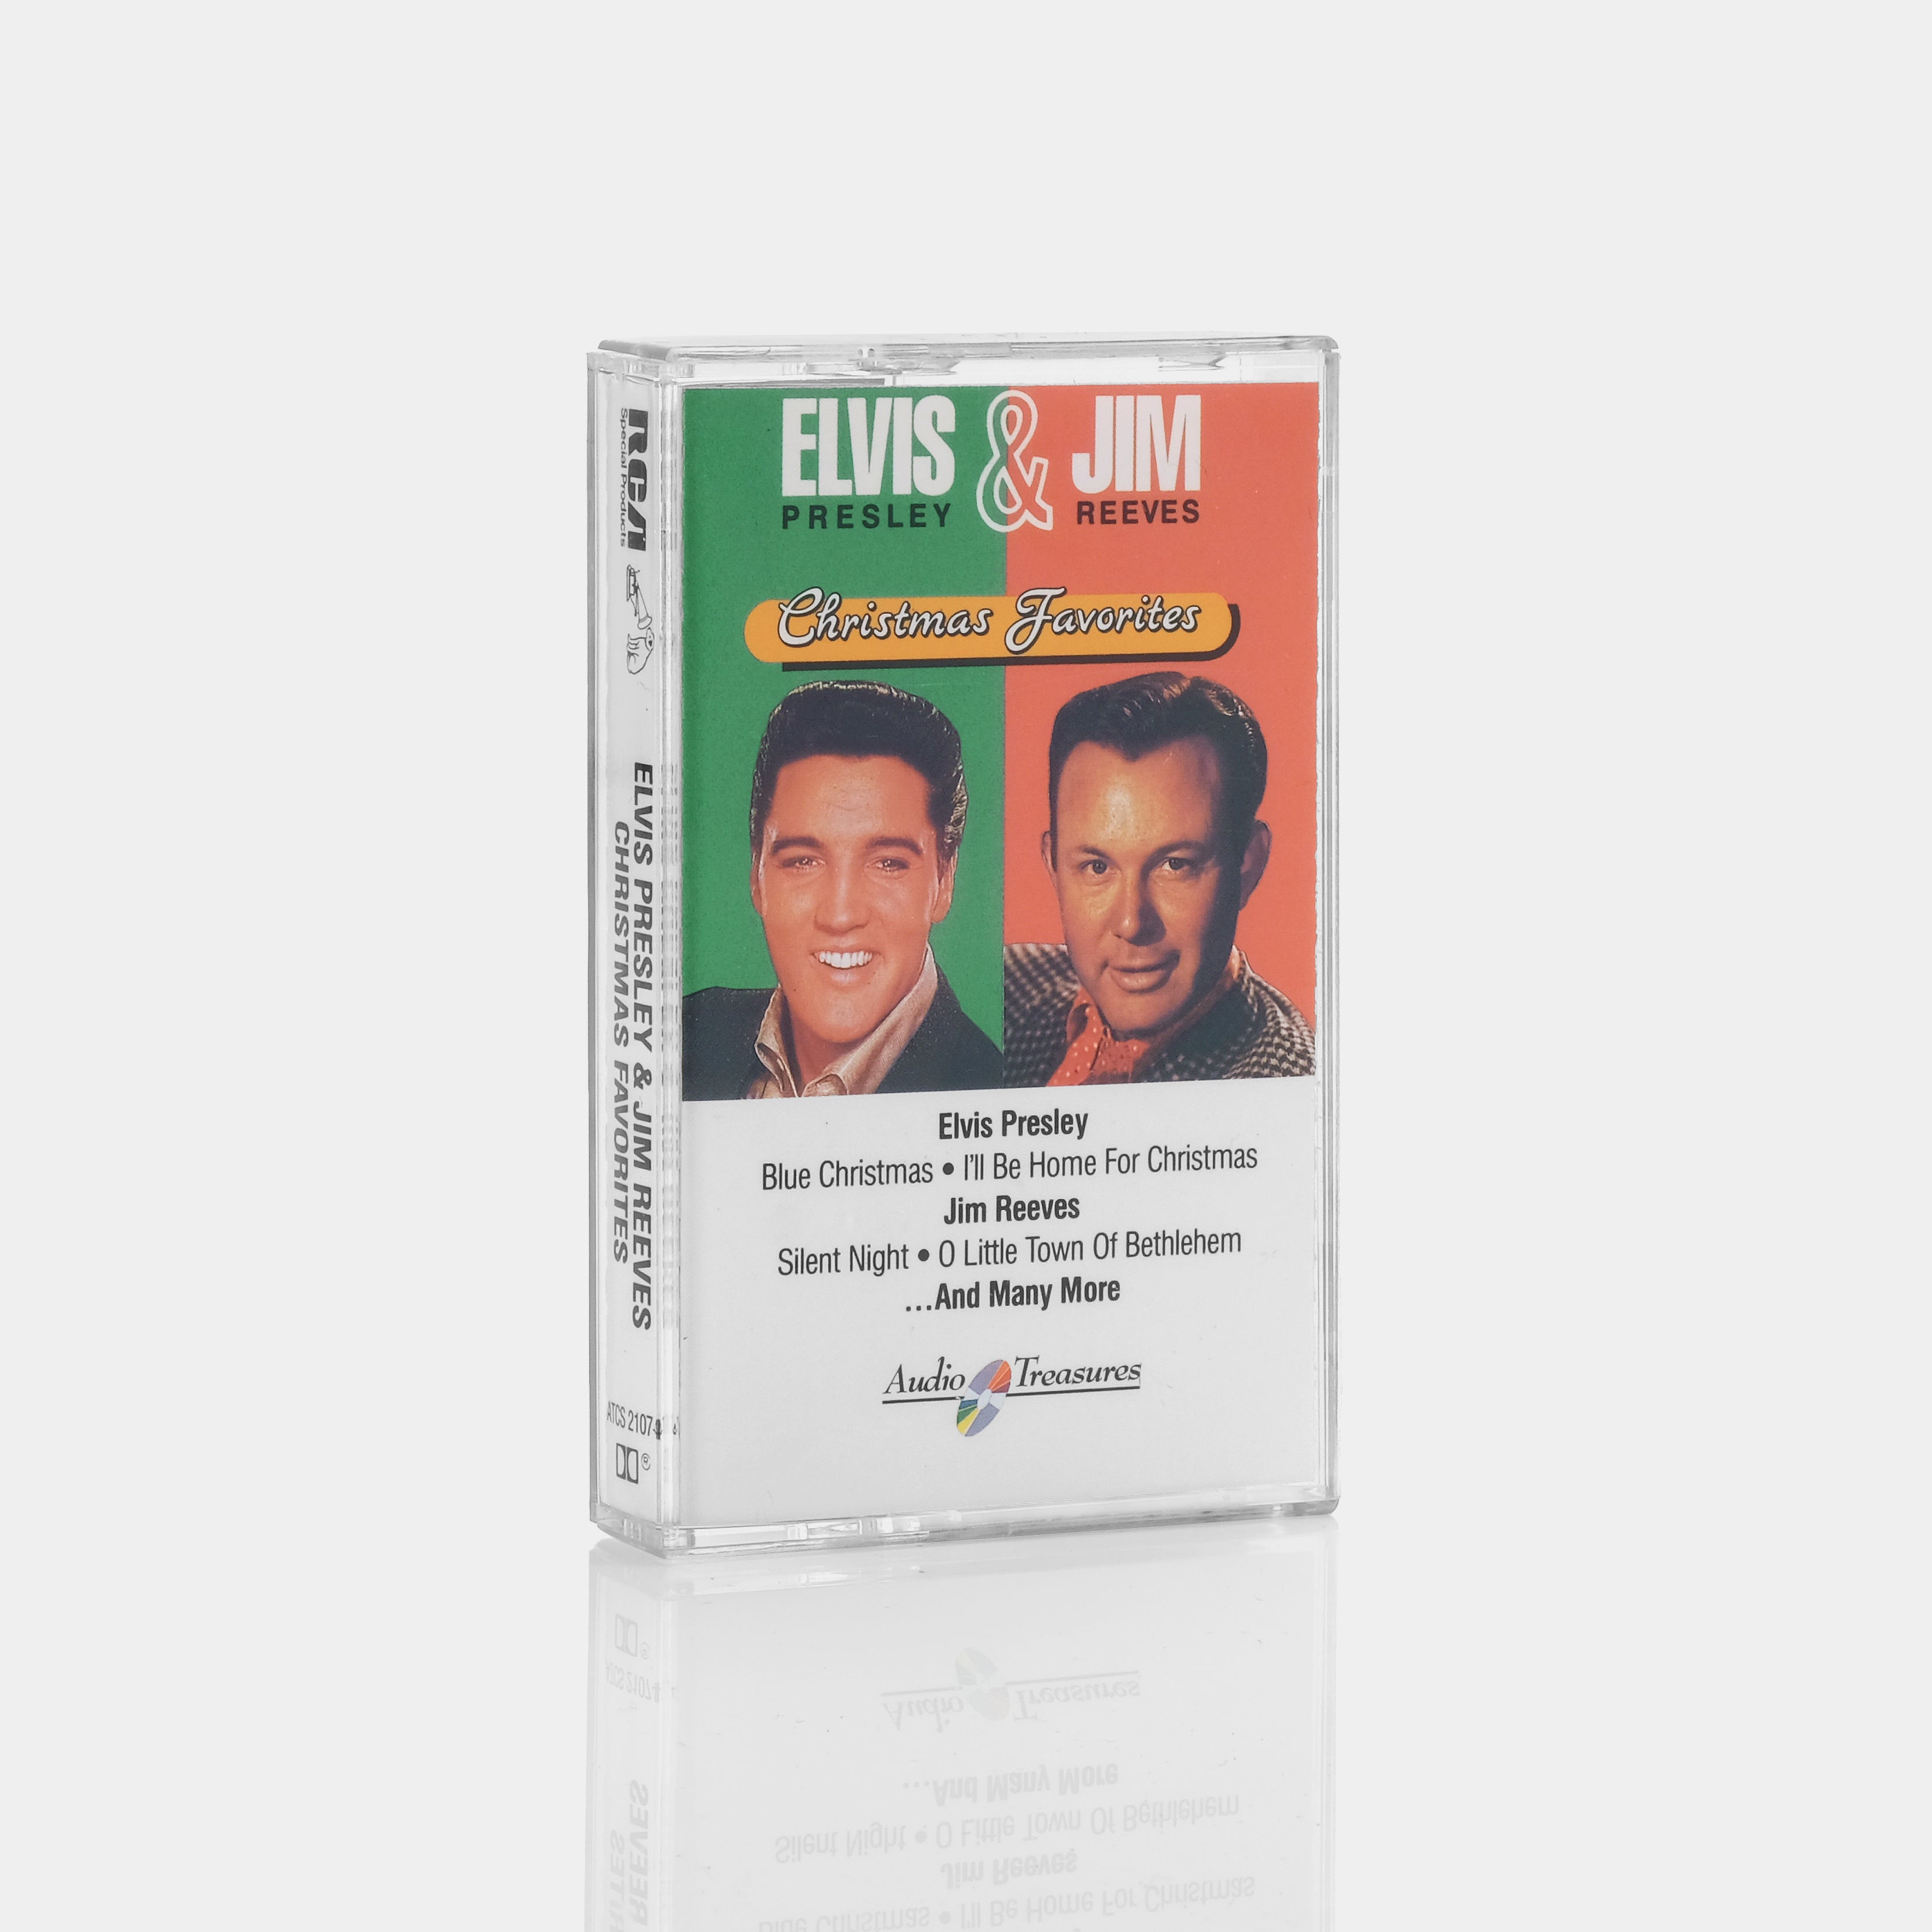 Elvis Presley & Jim Reeves - Christmas Favorites Cassette Tape